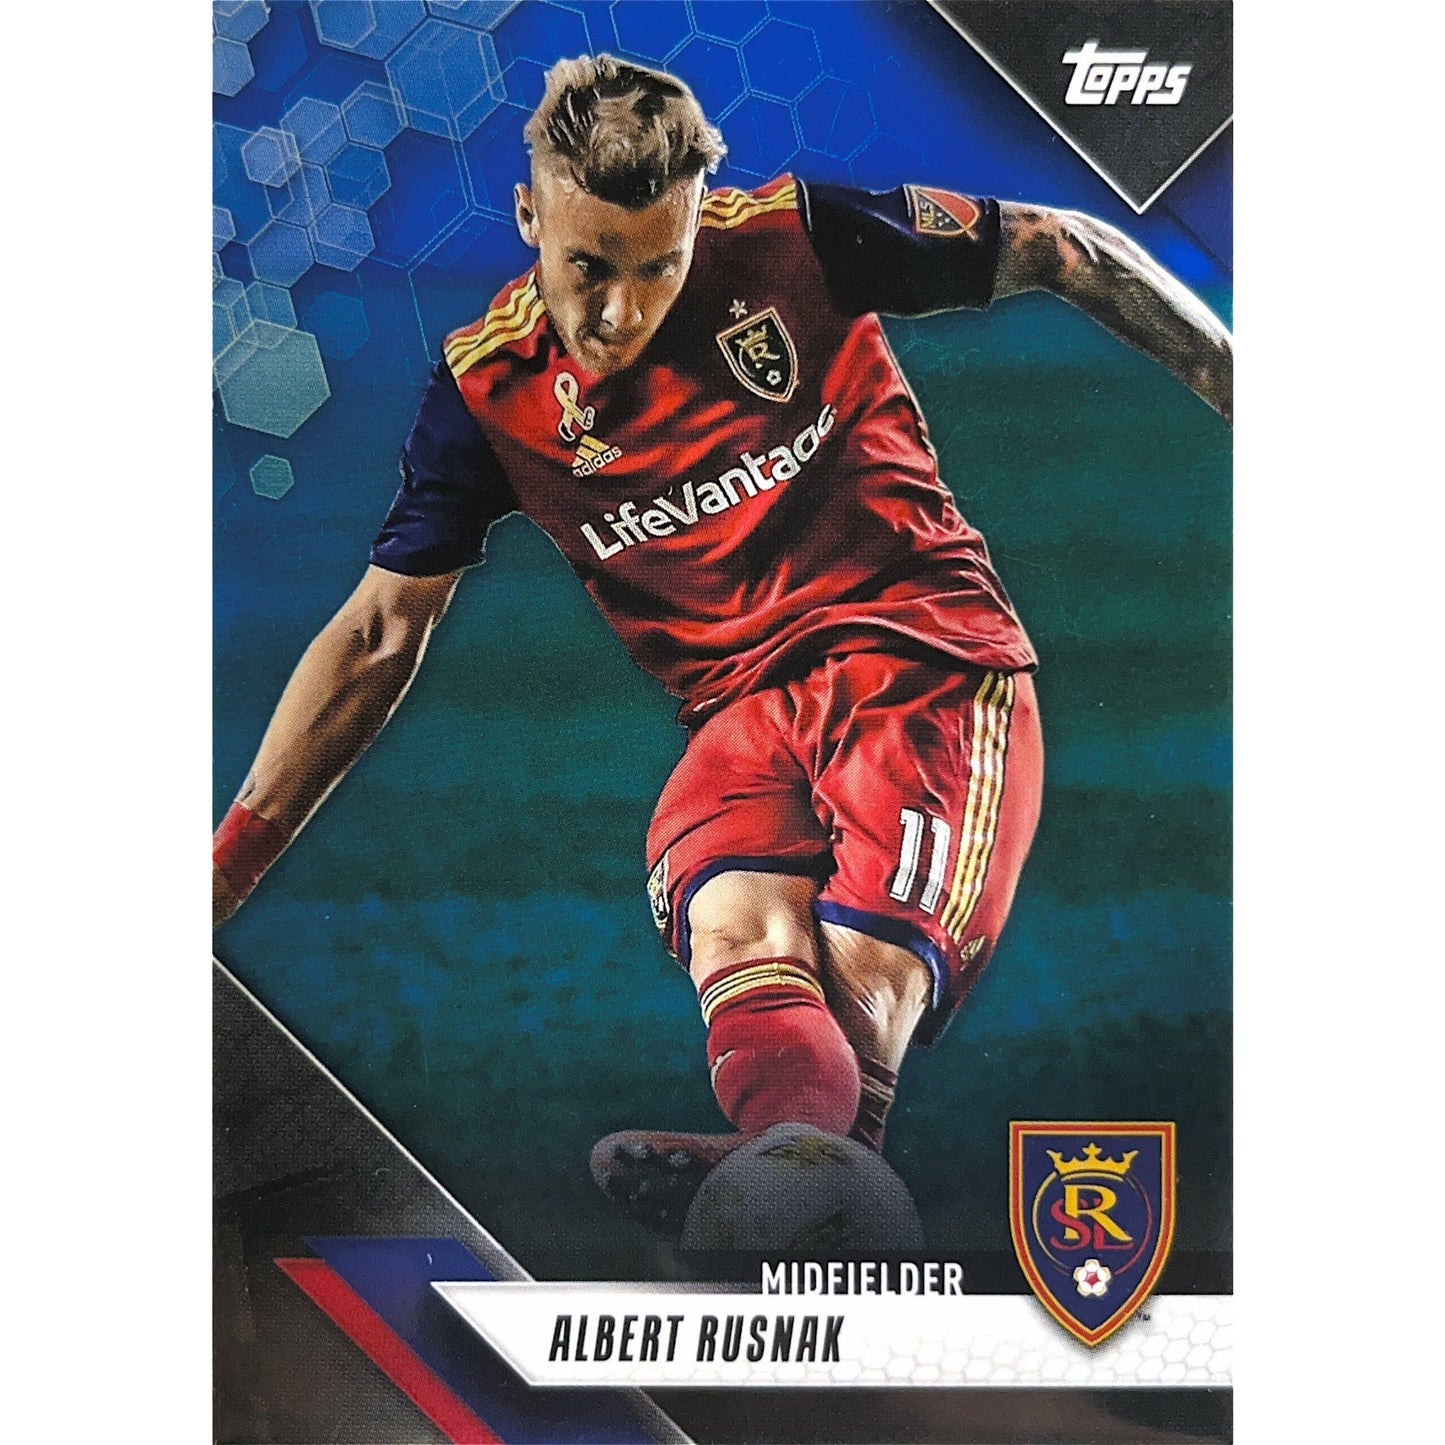 2019 Topps MLS Albert Rusnak /99